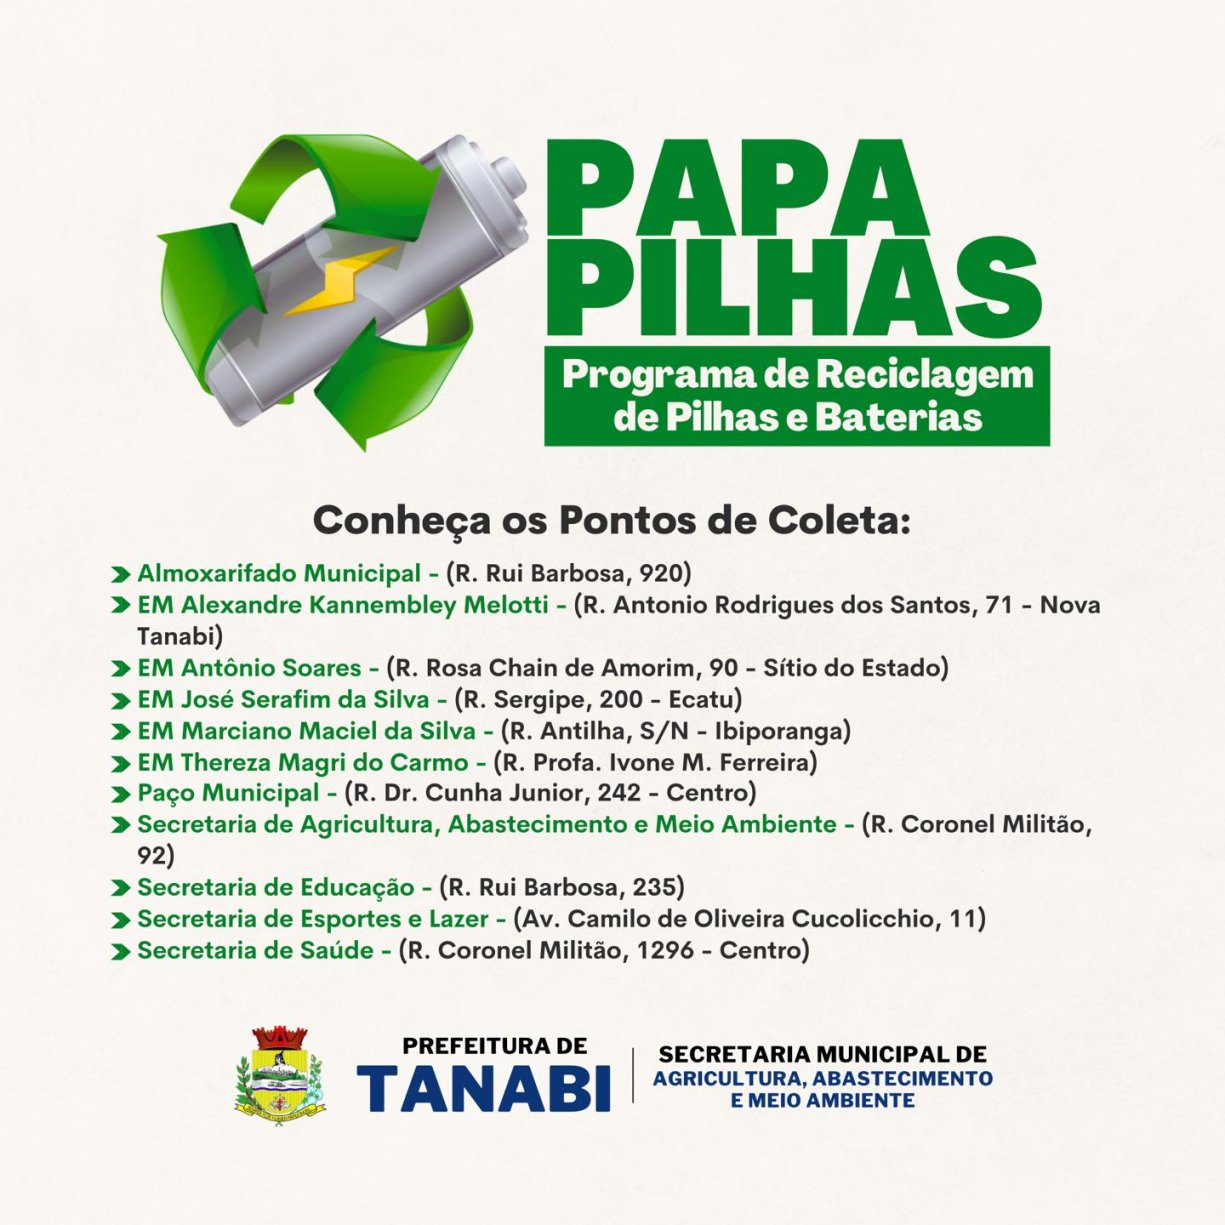 Programa de Reciclagem de Pilhas e Baterias no município.